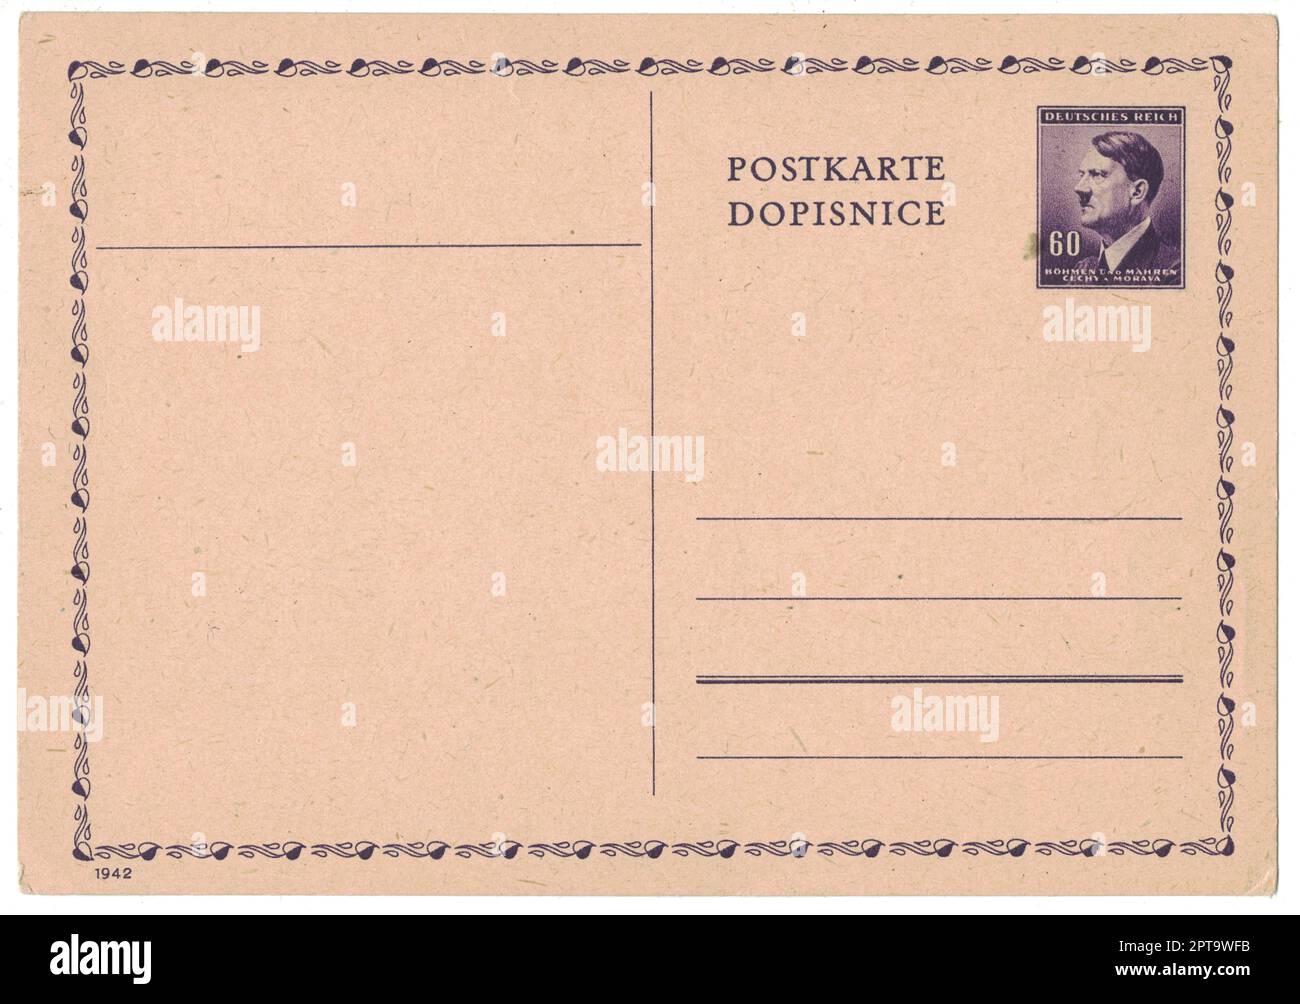 ALLEMAGNE (PROTECTORAT DE LA BOHÊME ET DE LA MORAVIE) - VERS 1942: L'ancienne carte postale avec timbre postal imprimé montre le portrait d'Adolf Hitler (homme politique, dirigeant Banque D'Images